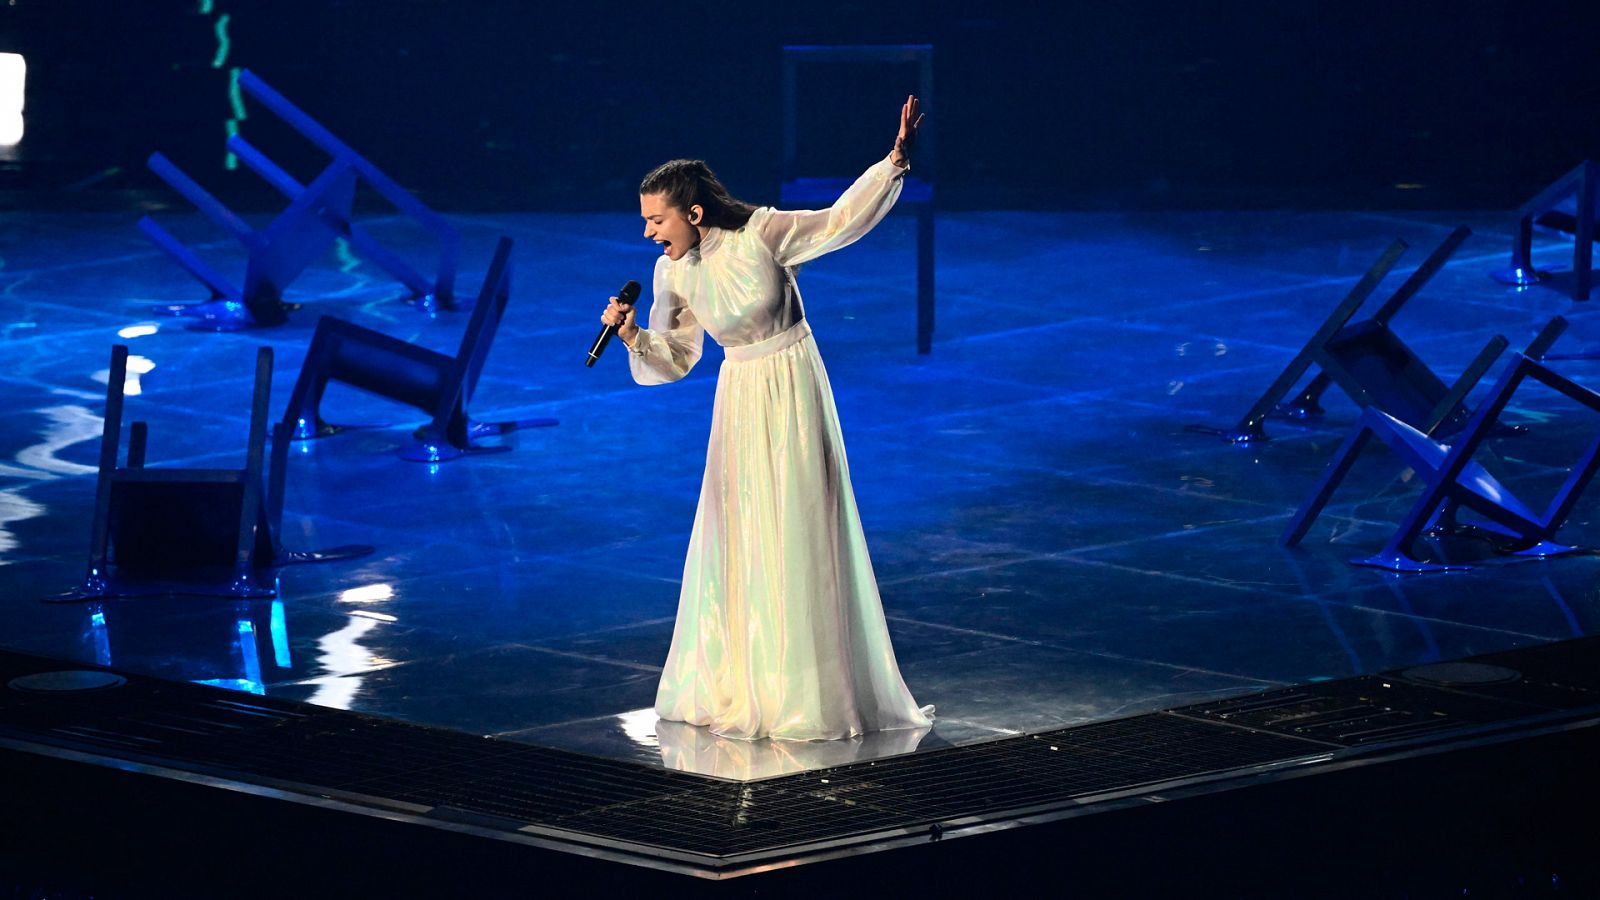 Eurovisión 2022 - Grecia: Amanda Tenfjord canta "Die Together" en la semifinal 1 